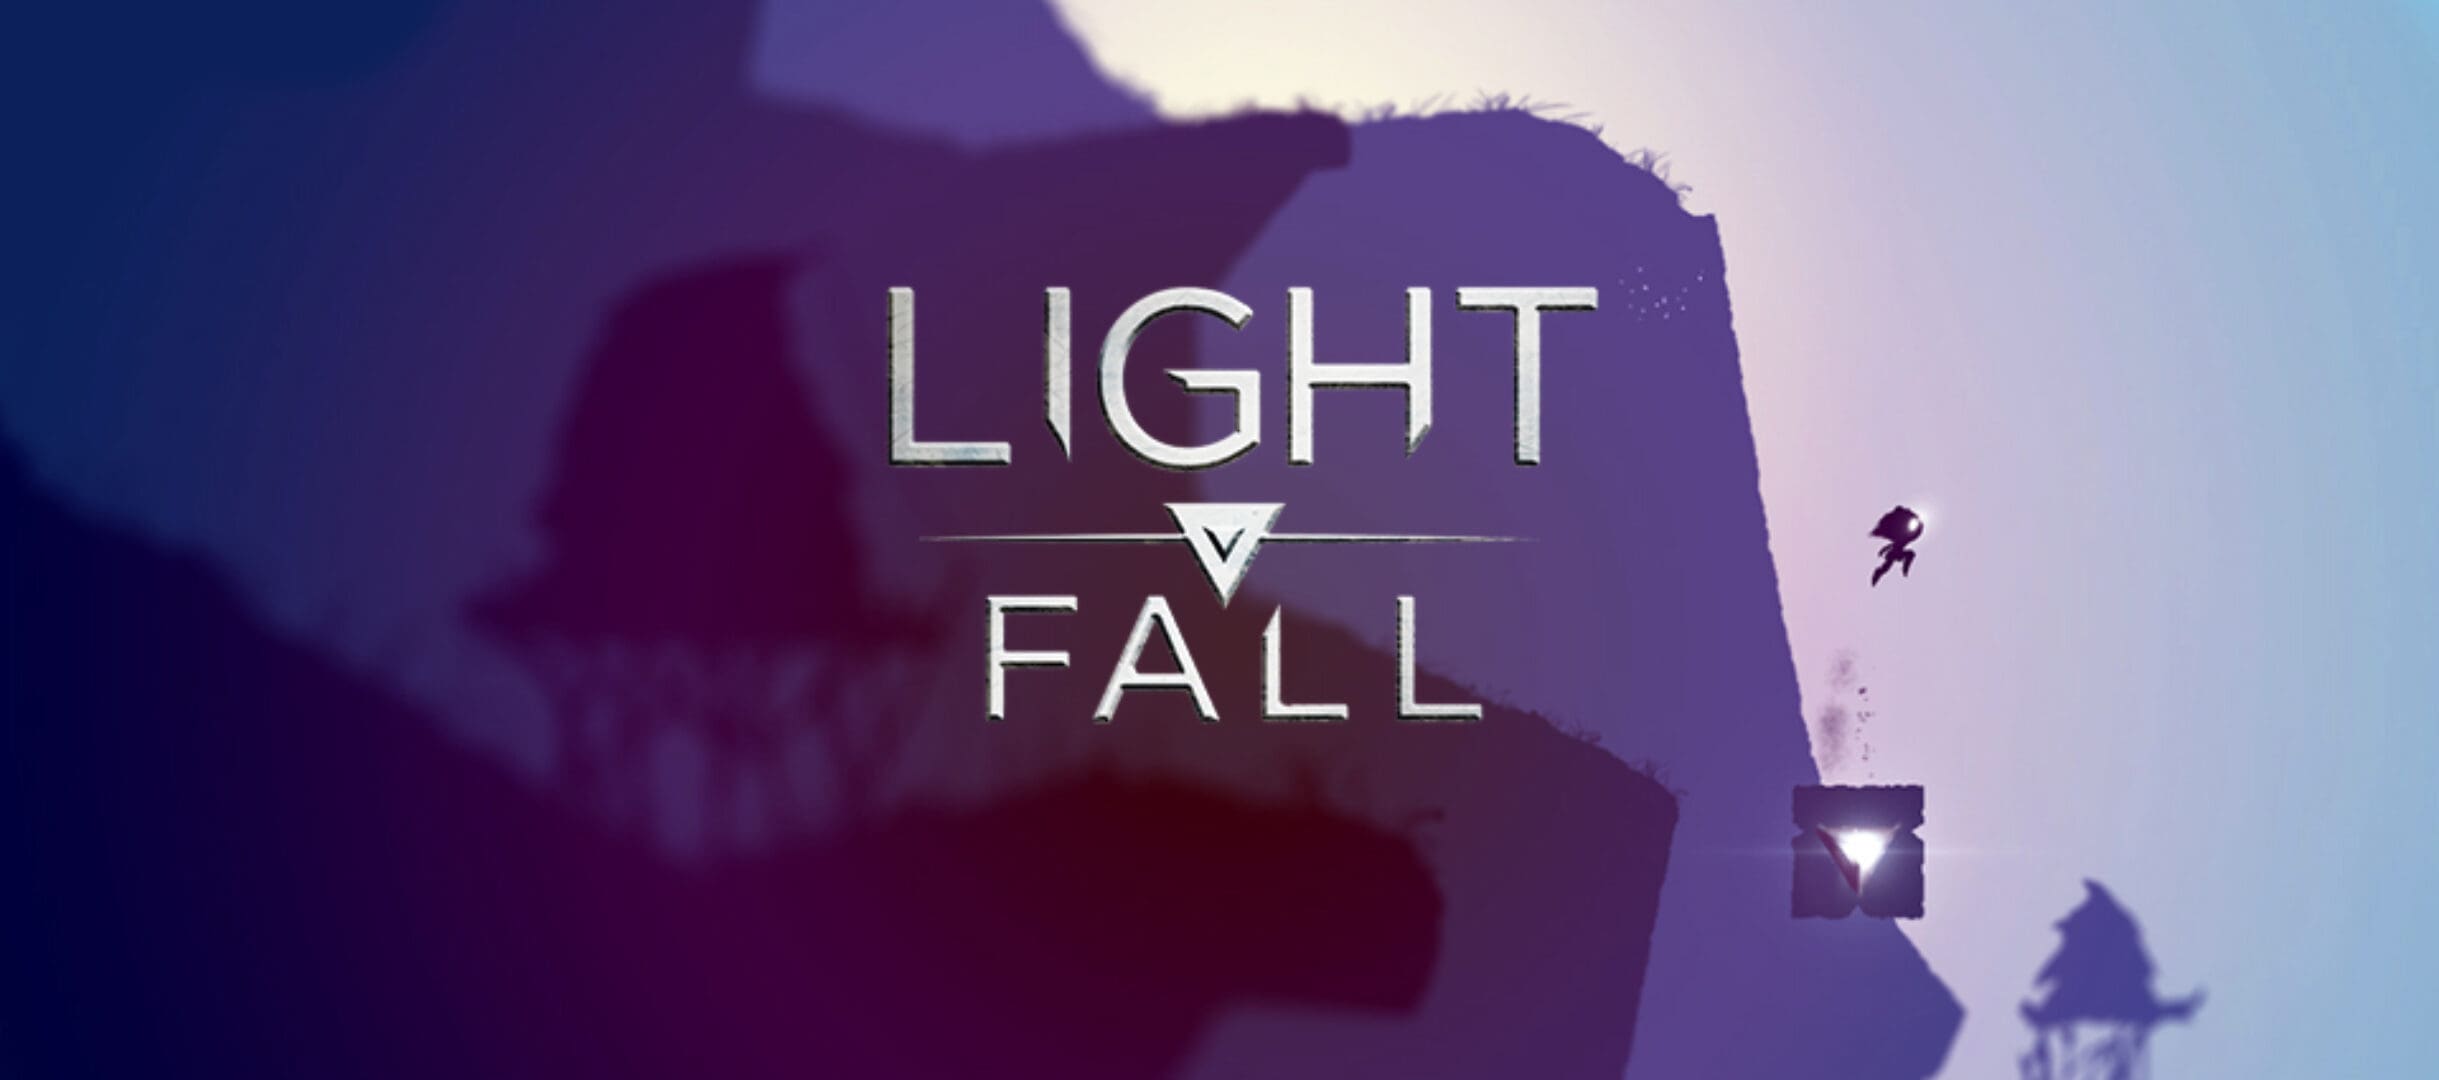 Light Fall, Bishop Games